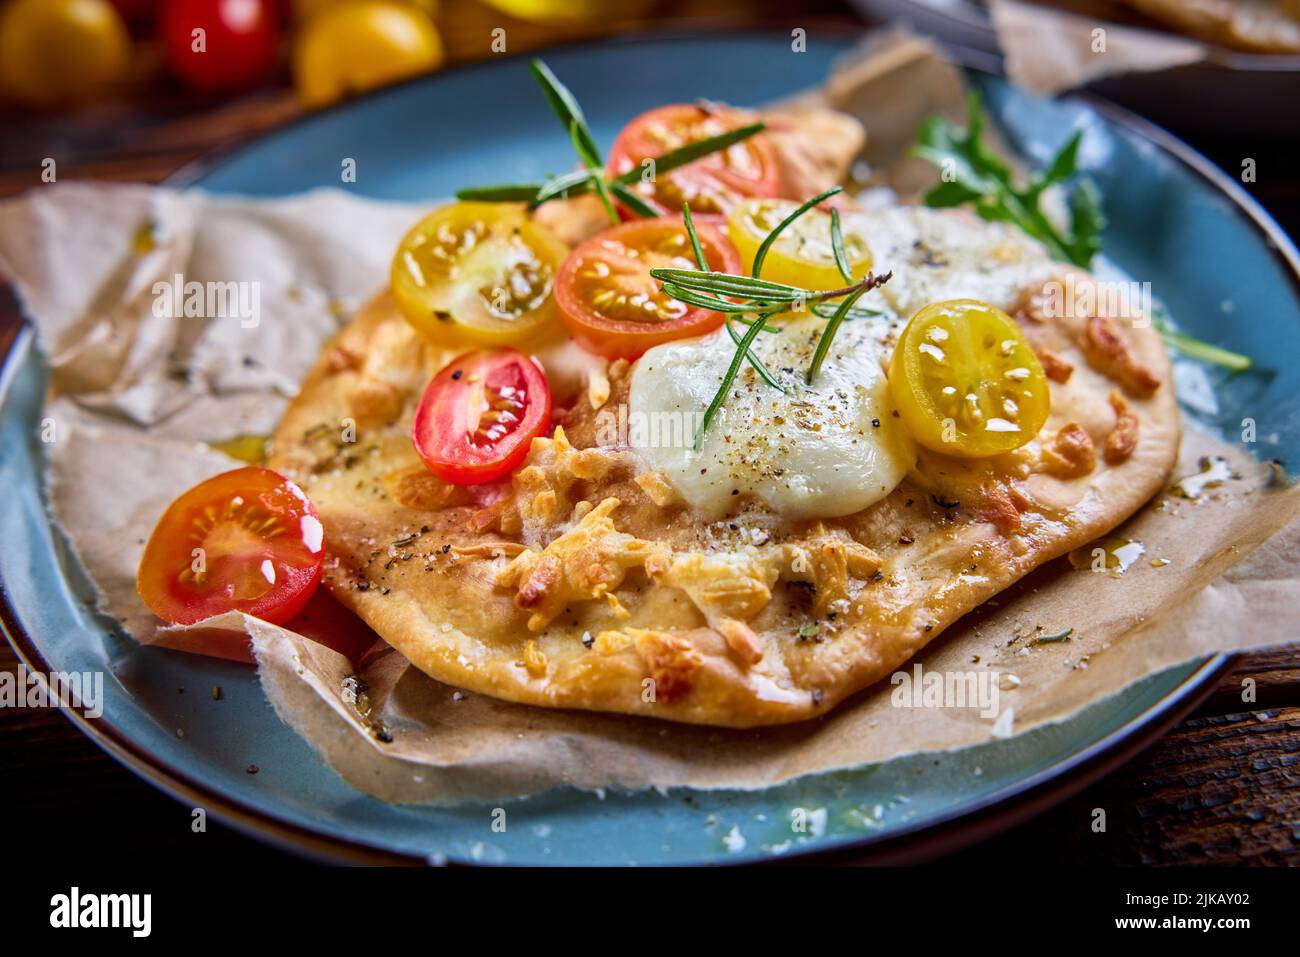 Desde arriba de apetitosa pizza de pan plano con tomates cherry rojos y amarillos queso mozzarella y hierbas cubiertas con aceite de oliva y servido en el plato Foto de stock